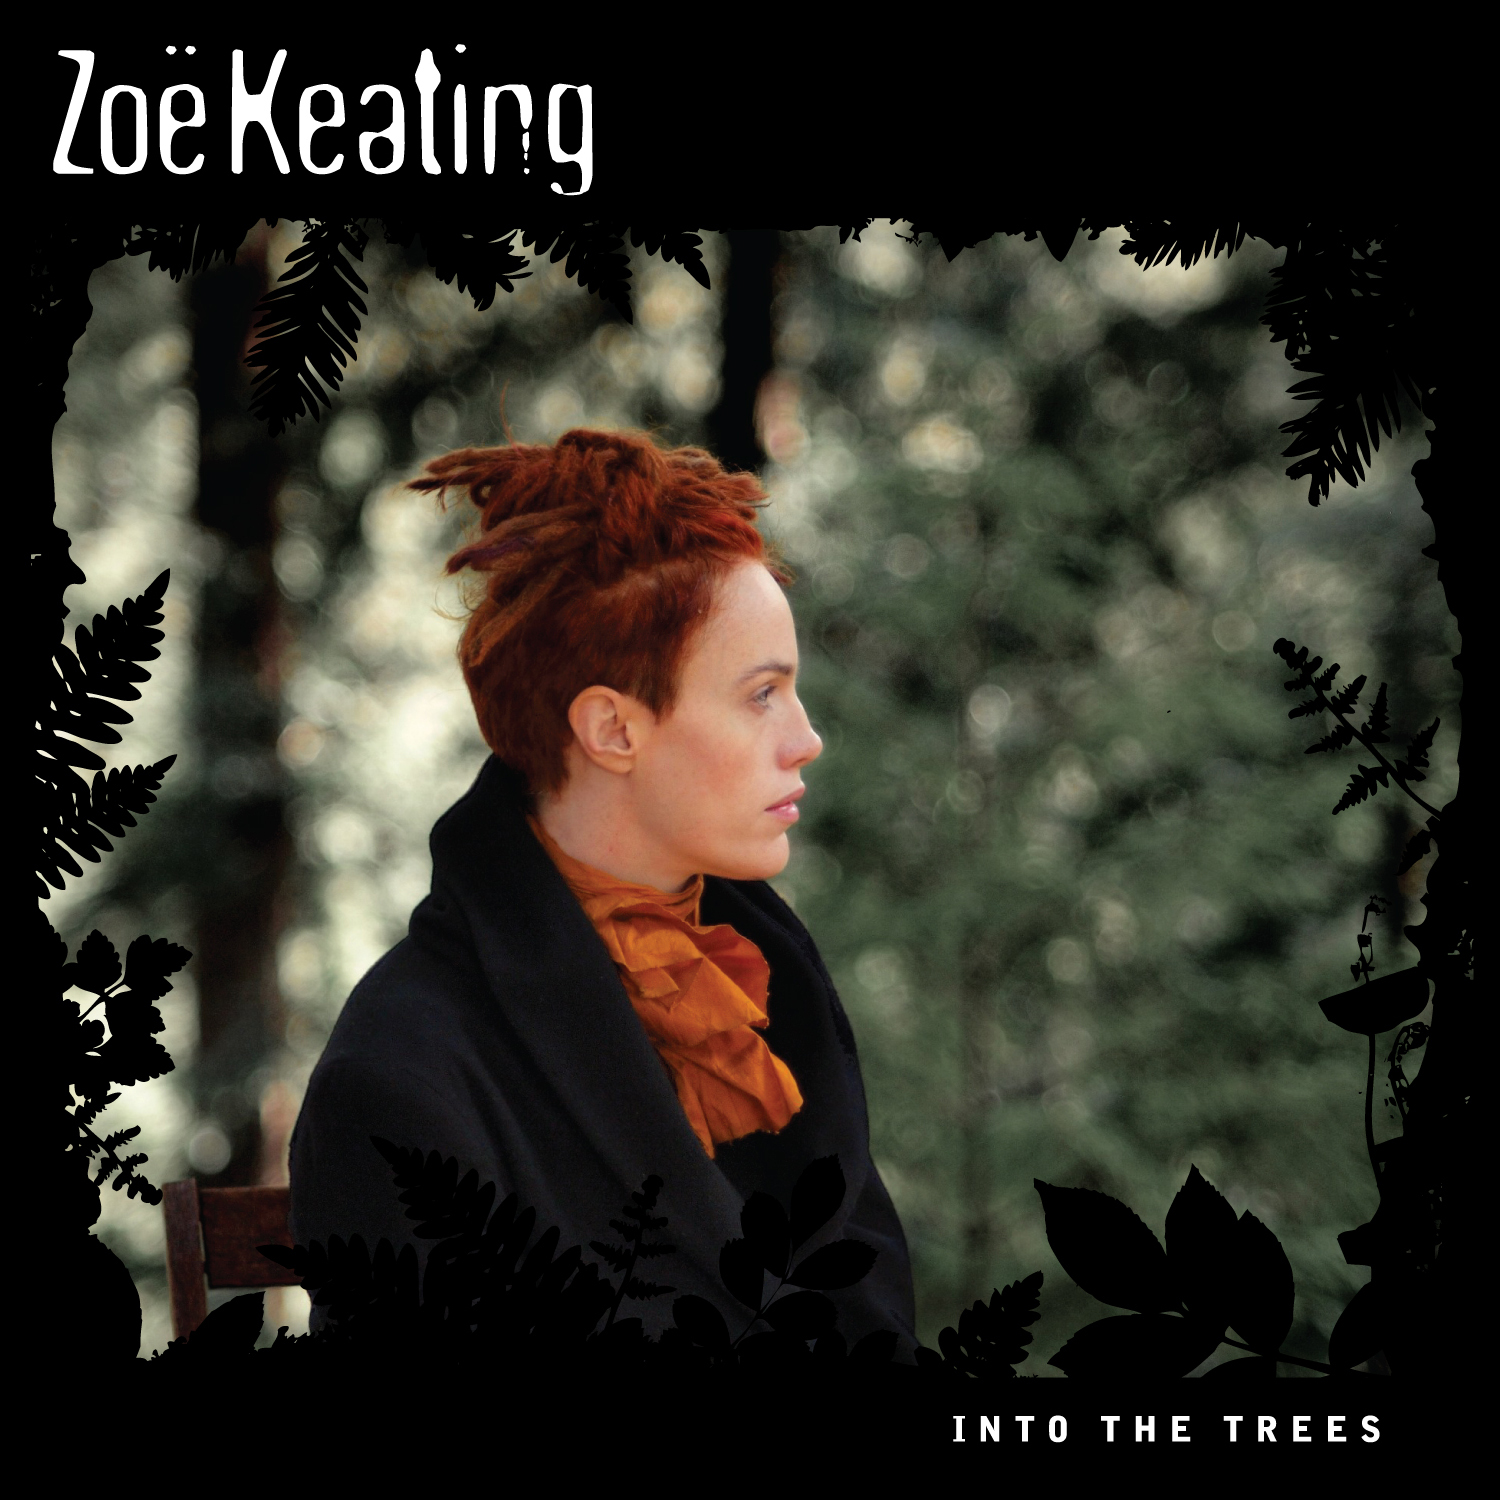 Cosa state ascoltando in cuffia in questo momento - Pagina 16 Zoe_Keating_IntoTheTrees_Cover